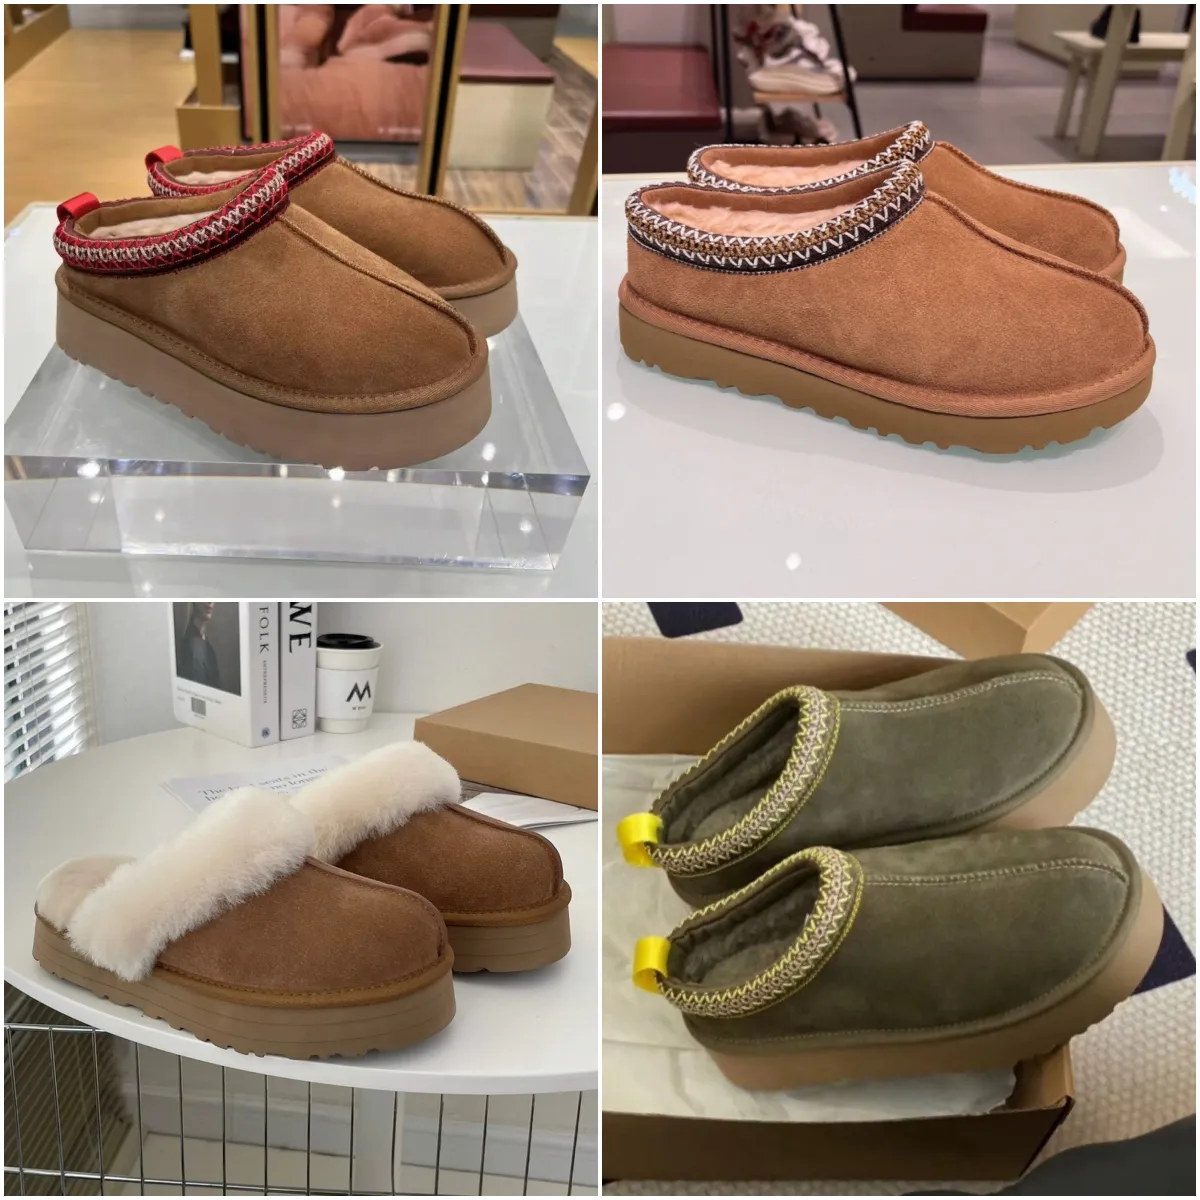 المصمم تسمان Slippers أستراليا منصة شببر UG Tazz أحذية أسترالي شرائح رقيقة من جلد الغنم الفراء حقًا أحذية جلدية حقيقية للعلامة التجارية الكلاسيكية للسيدات خارج شريط التمرير 10A